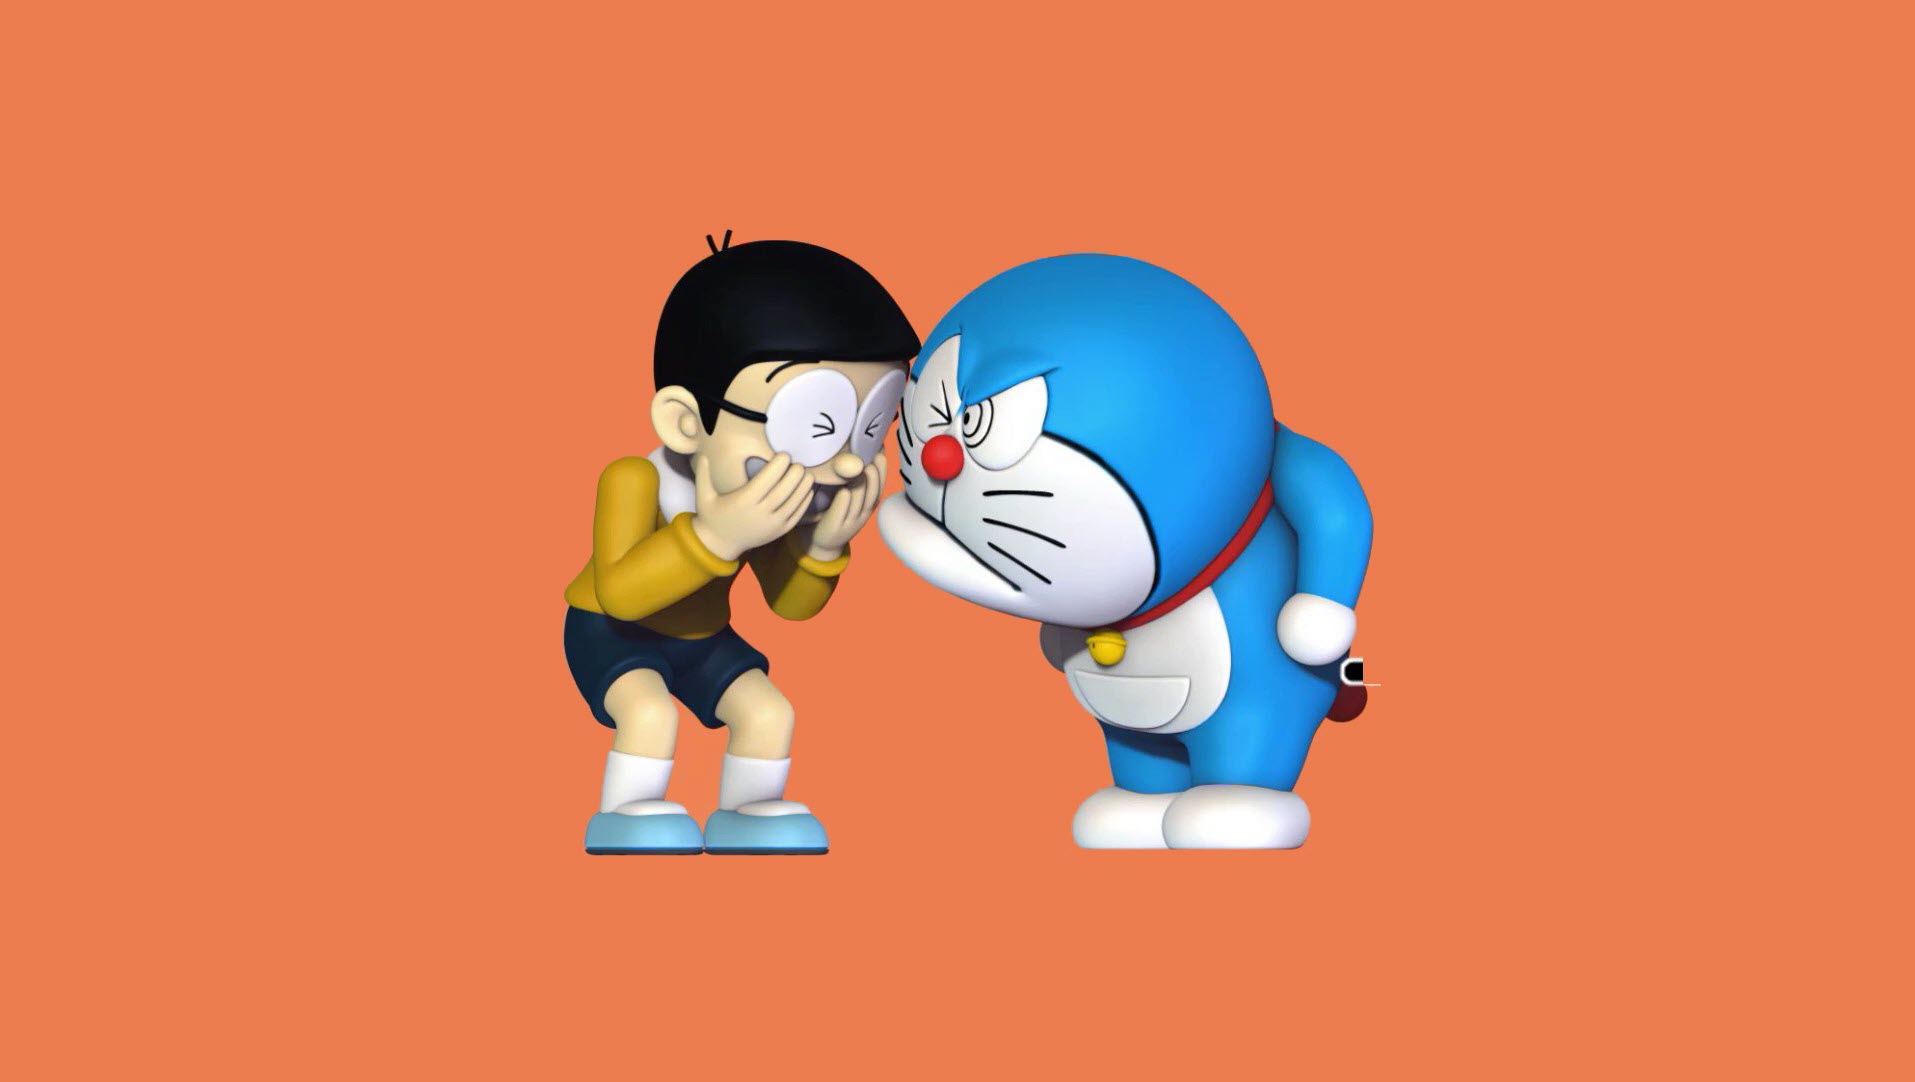 Chào mừng bạn đến với thế giới Doraemon 3D đáng yêu. Hình nền Doraemon 3D cute sẽ mang lại cho bạn một trải nghiệm tuyệt vời hơn và làm thay đổi không gian làm việc của bạn một cách độc đáo. Cùng với hình ảnh đáng yêu này, cuộc sống sẽ trở nên vui tươi hơn.